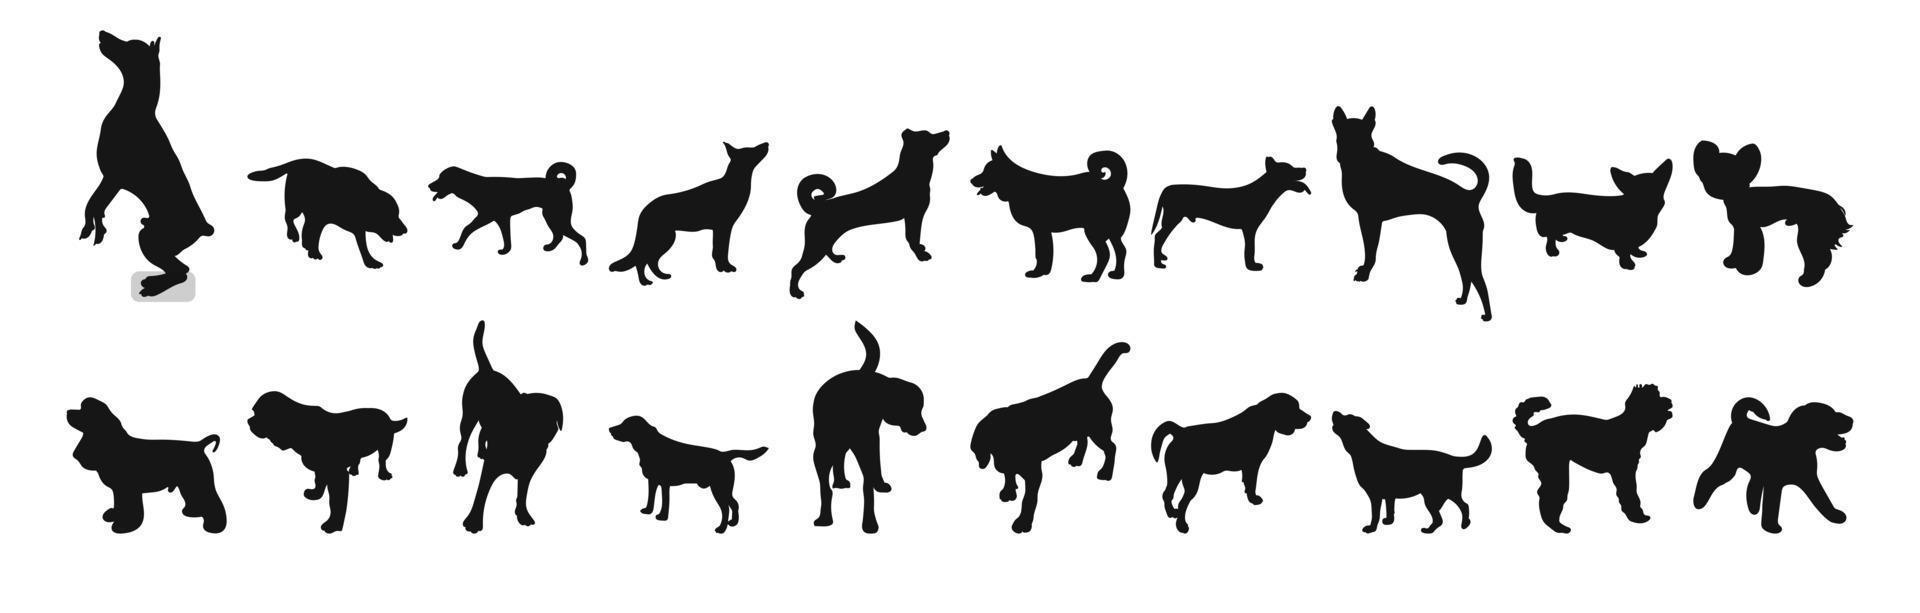 ensemble de silhouettes noires de chiens debout, position de course, pack de formes et de figures d'animaux de compagnie dessinés à la main, fond blanc, image vectorielle isolée vecteur